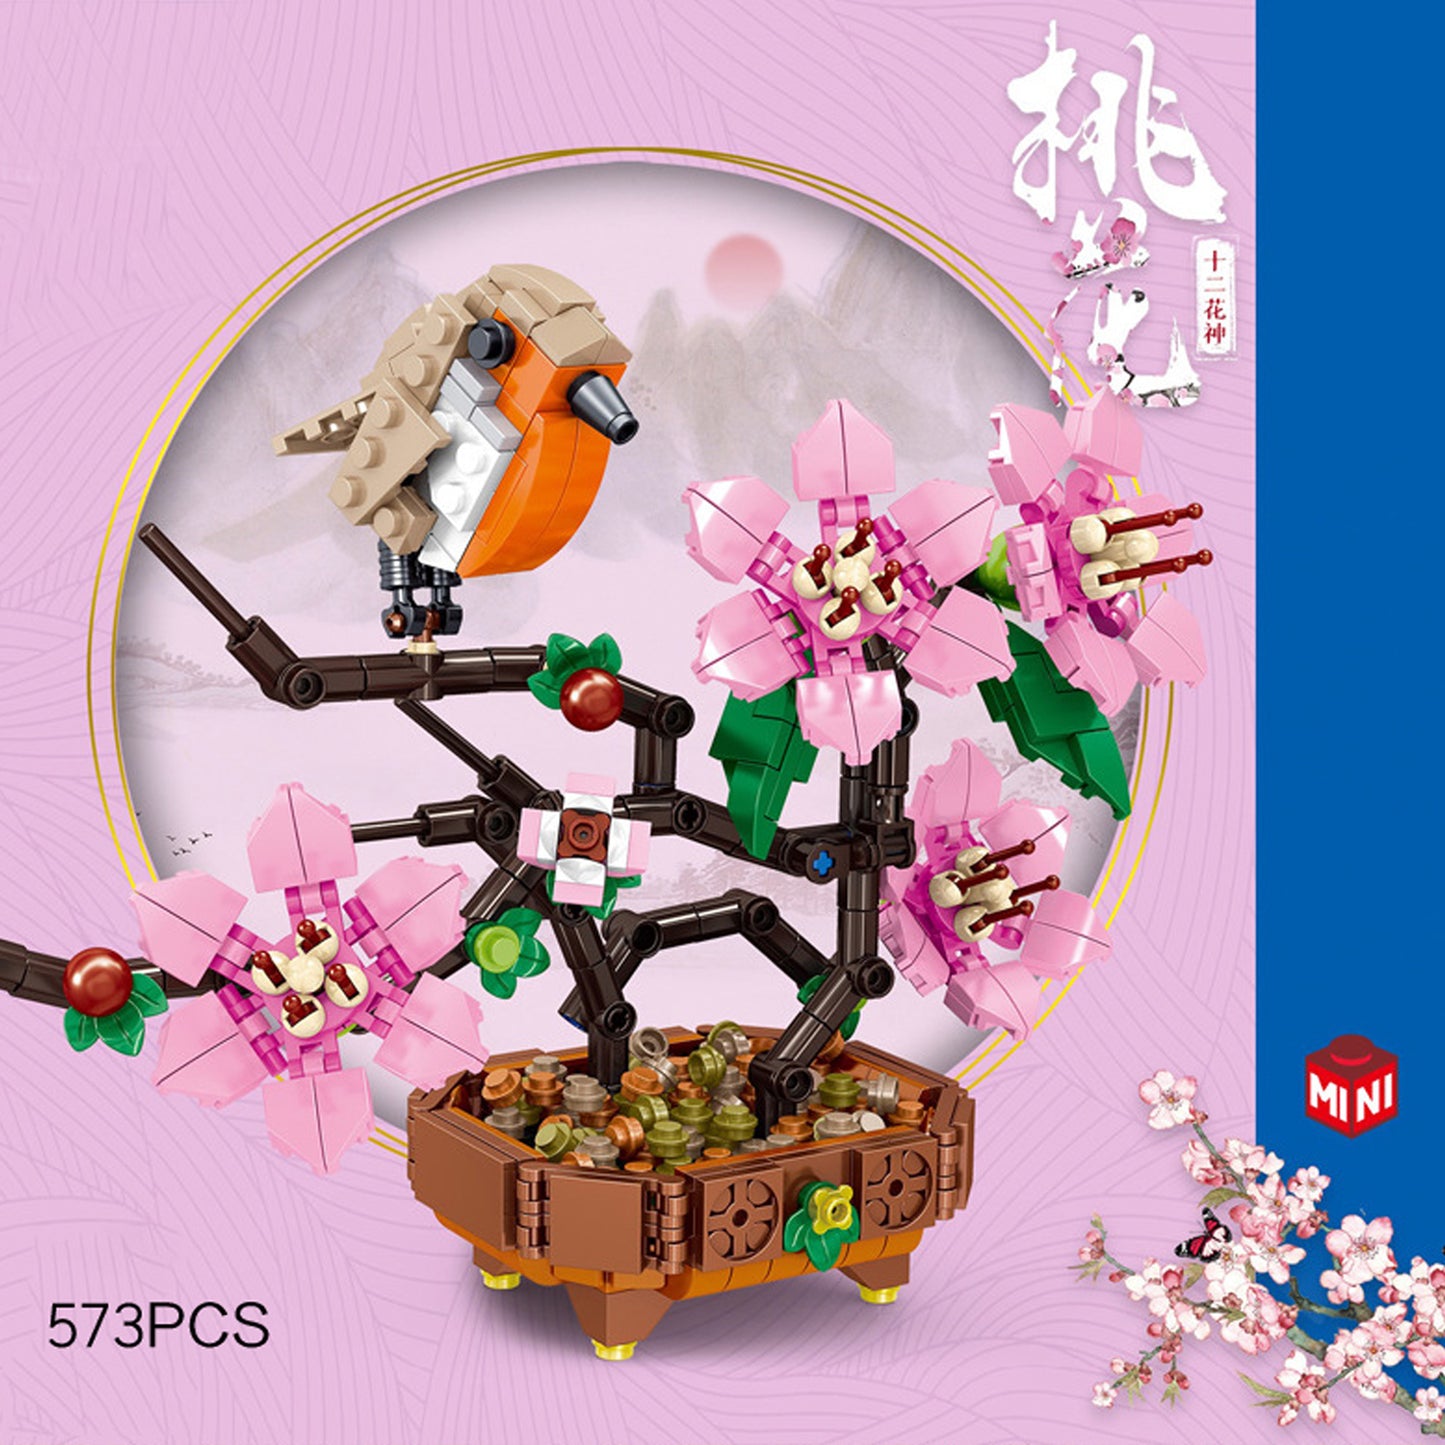 5.5" Peach Blossom & Bird Building Set